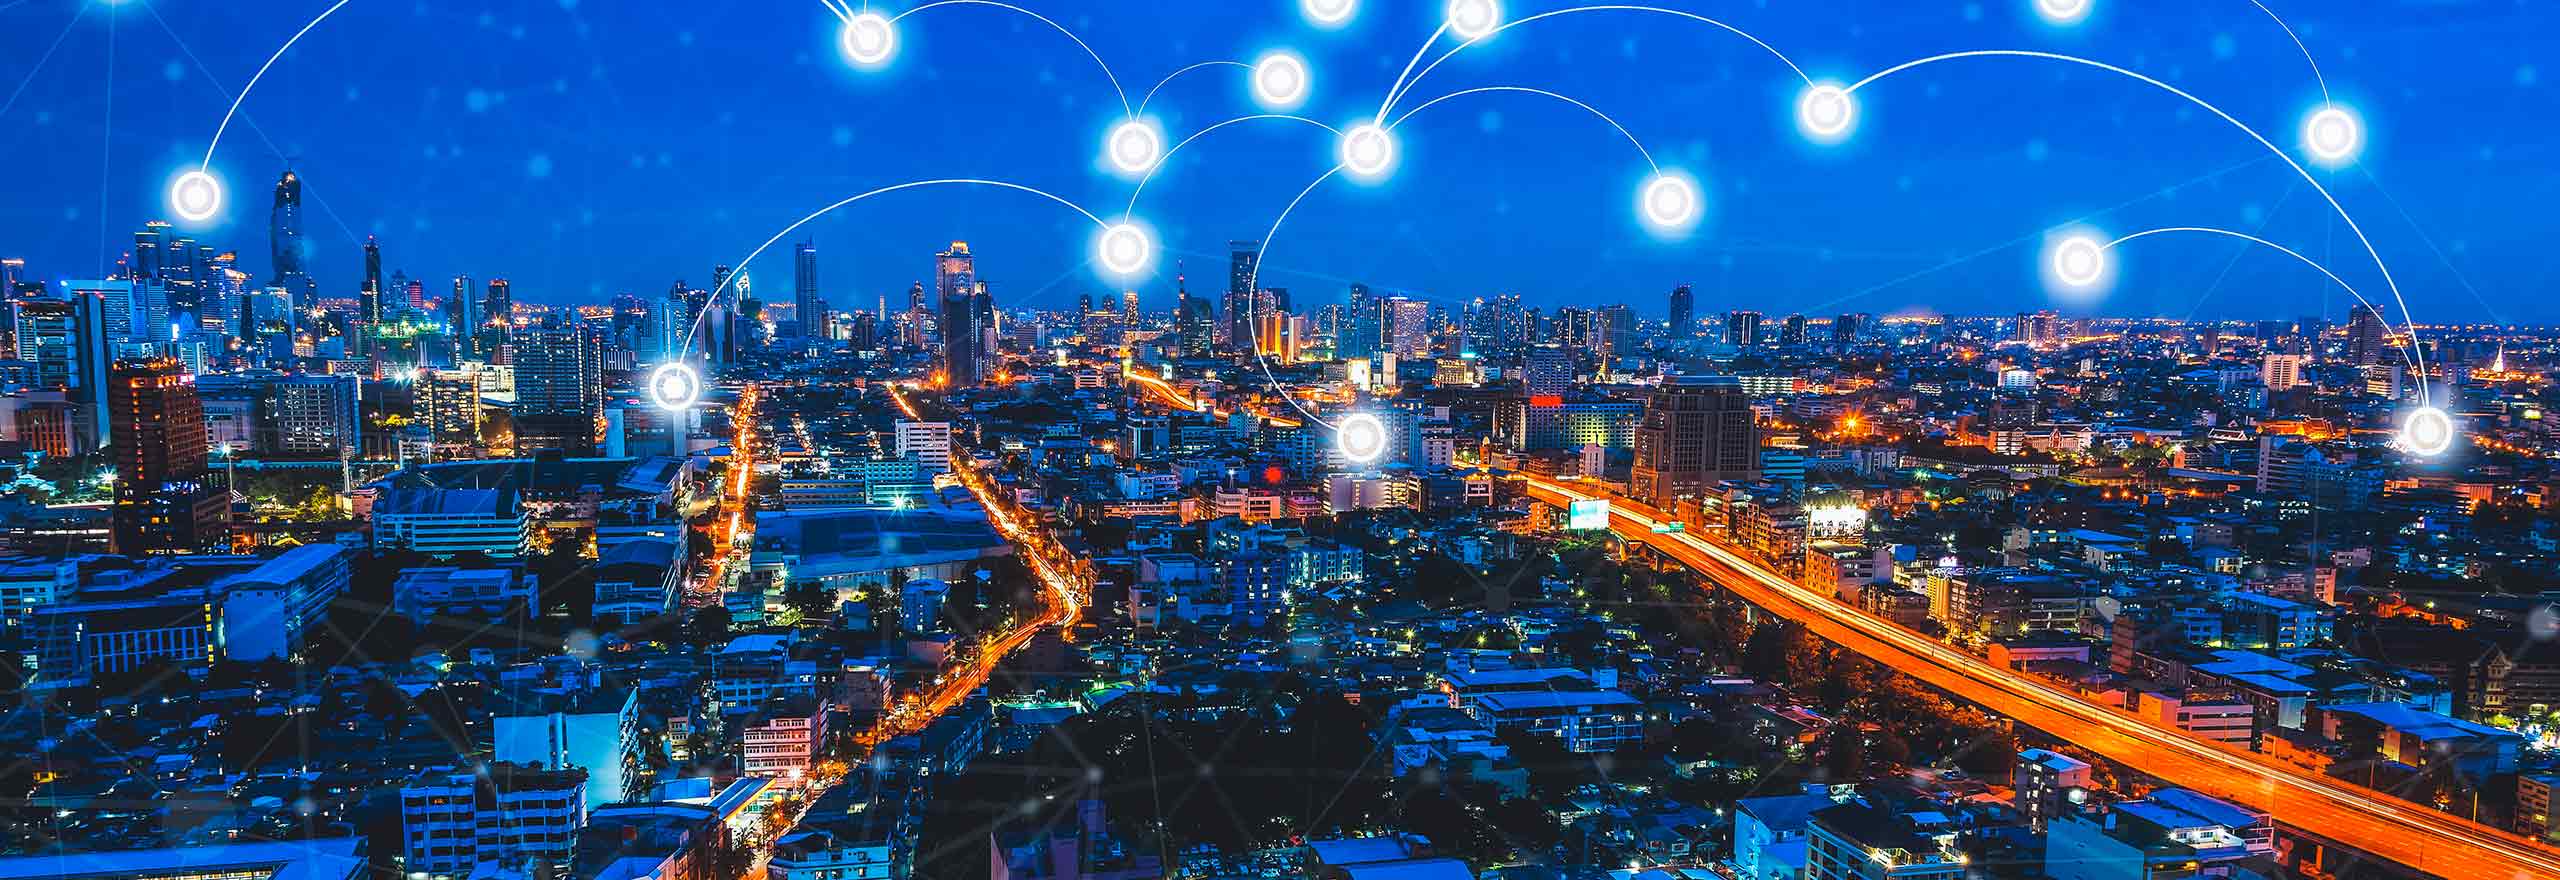 Verbindungstechnologie in einer Smart City